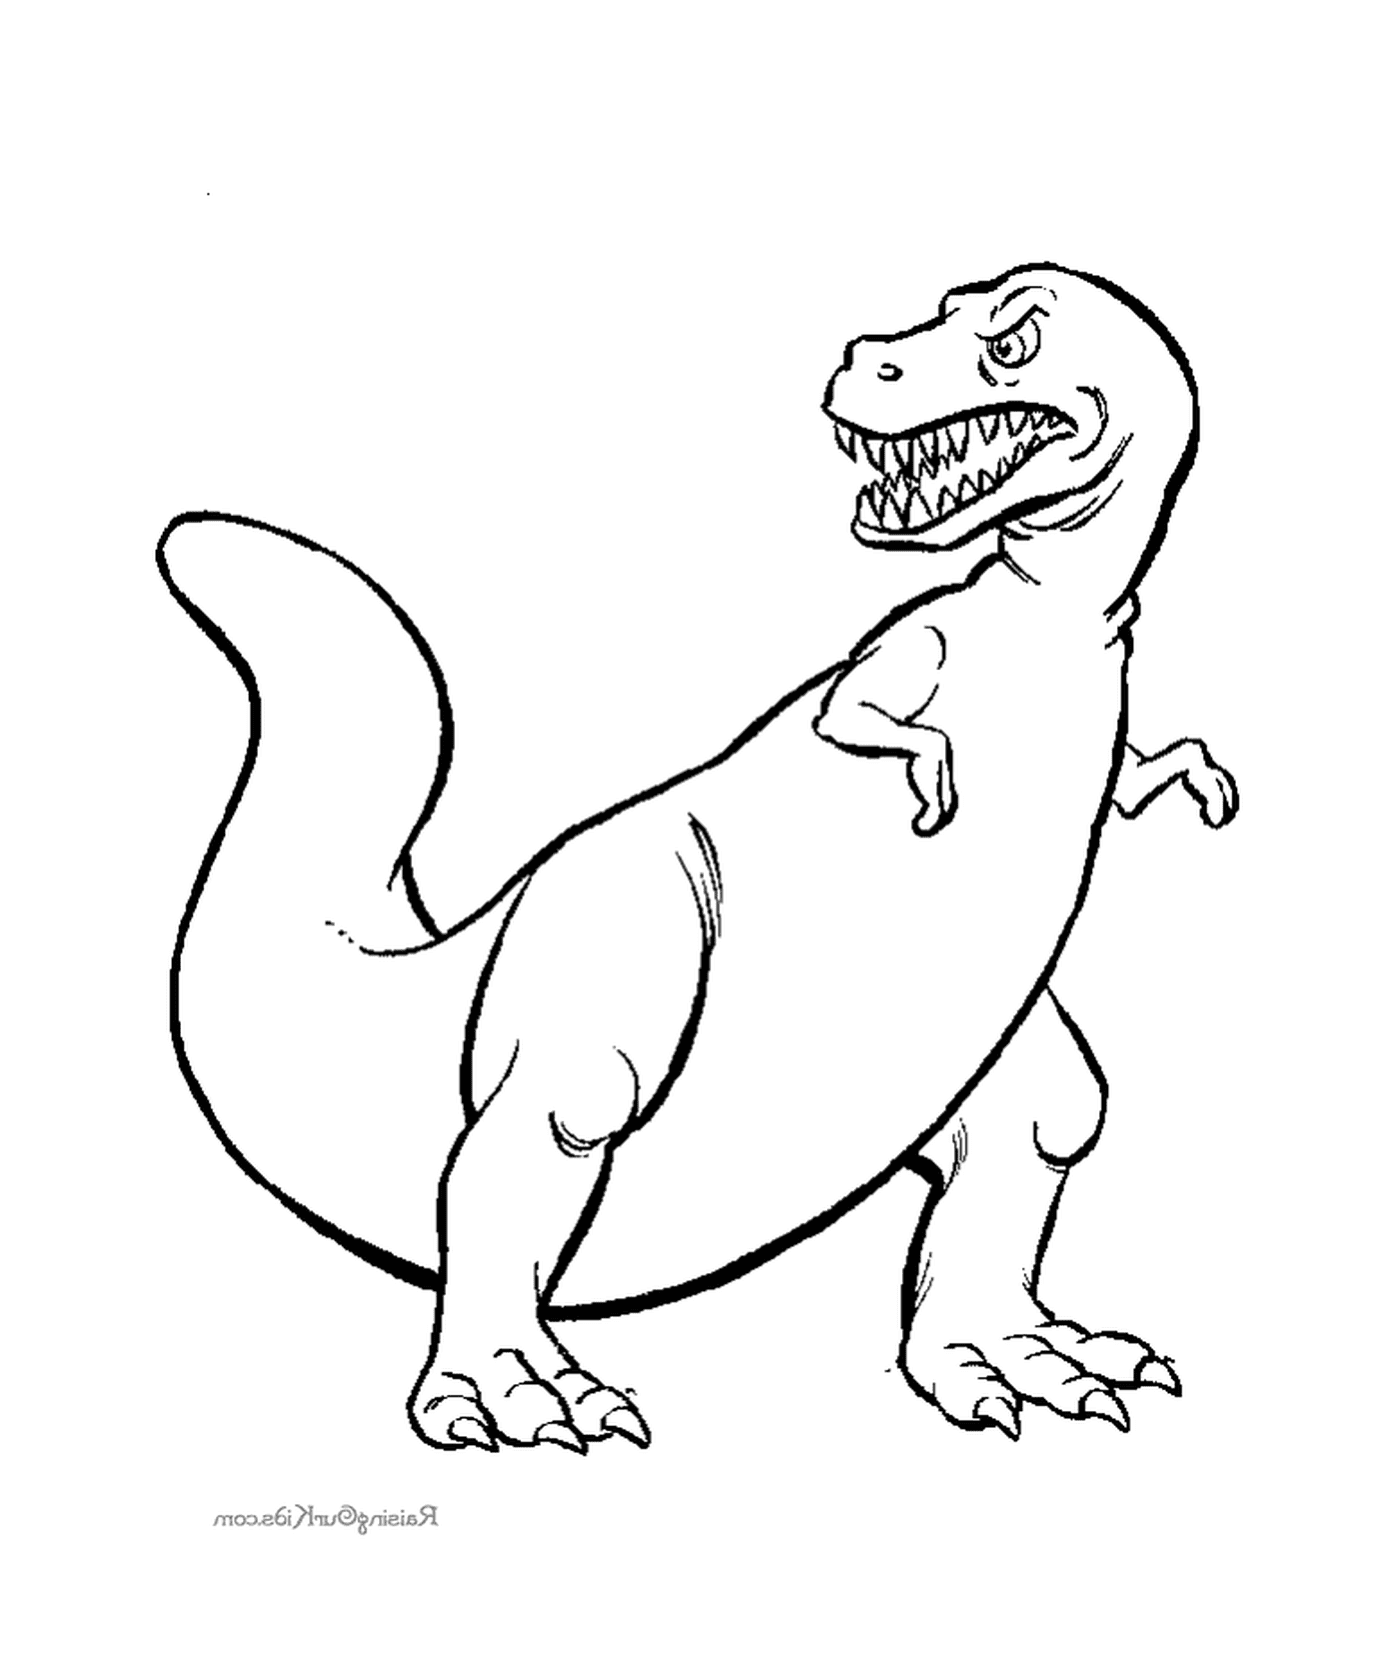  Нарисованный динозавр 